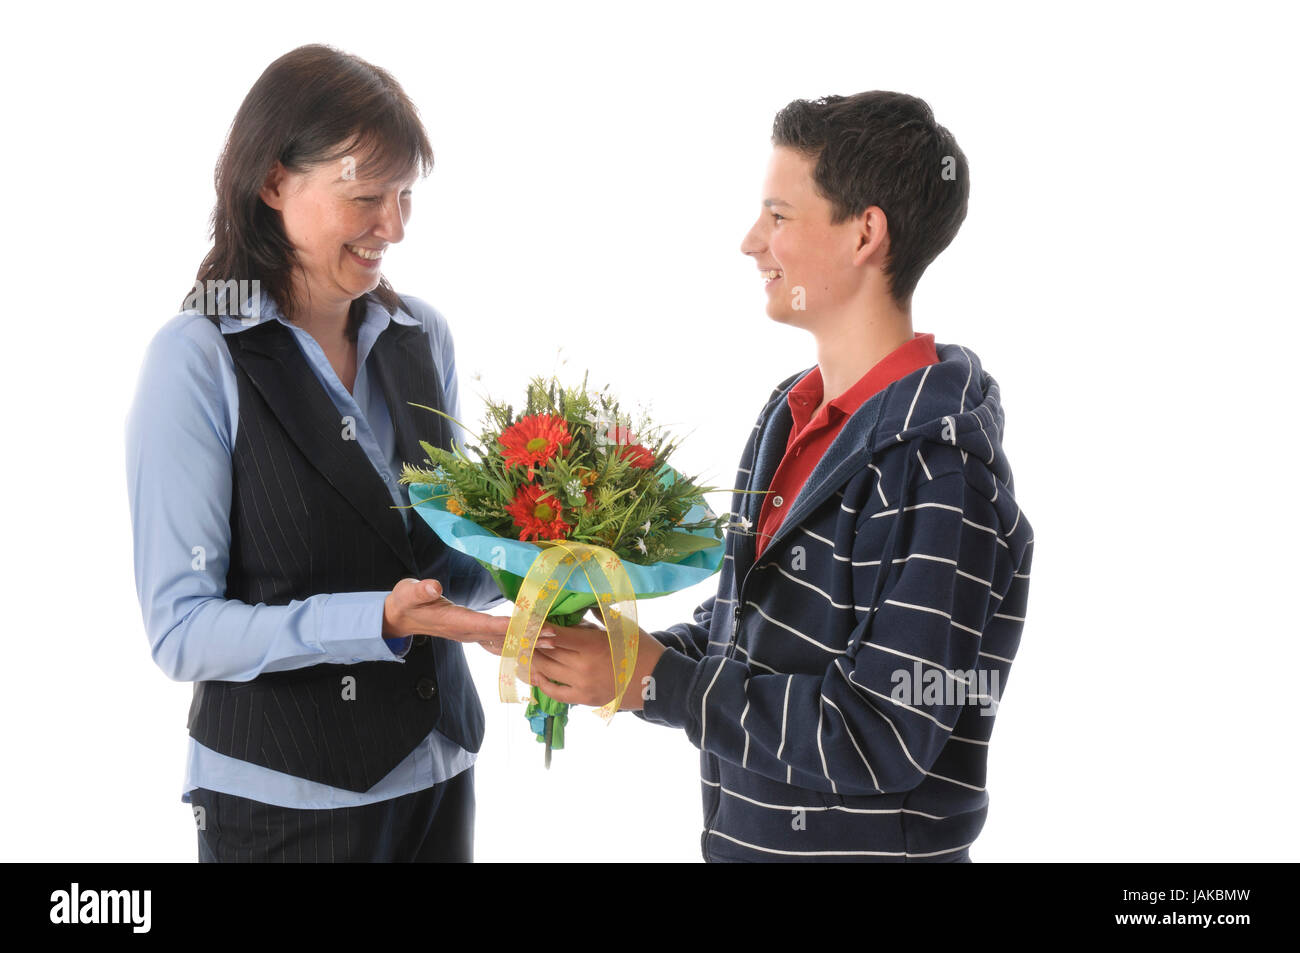 Mutter und ihr jugendlicher Sohn, er überreicht ihr einen Blumenstrauß vor weißem Hintergrund Stock Photo